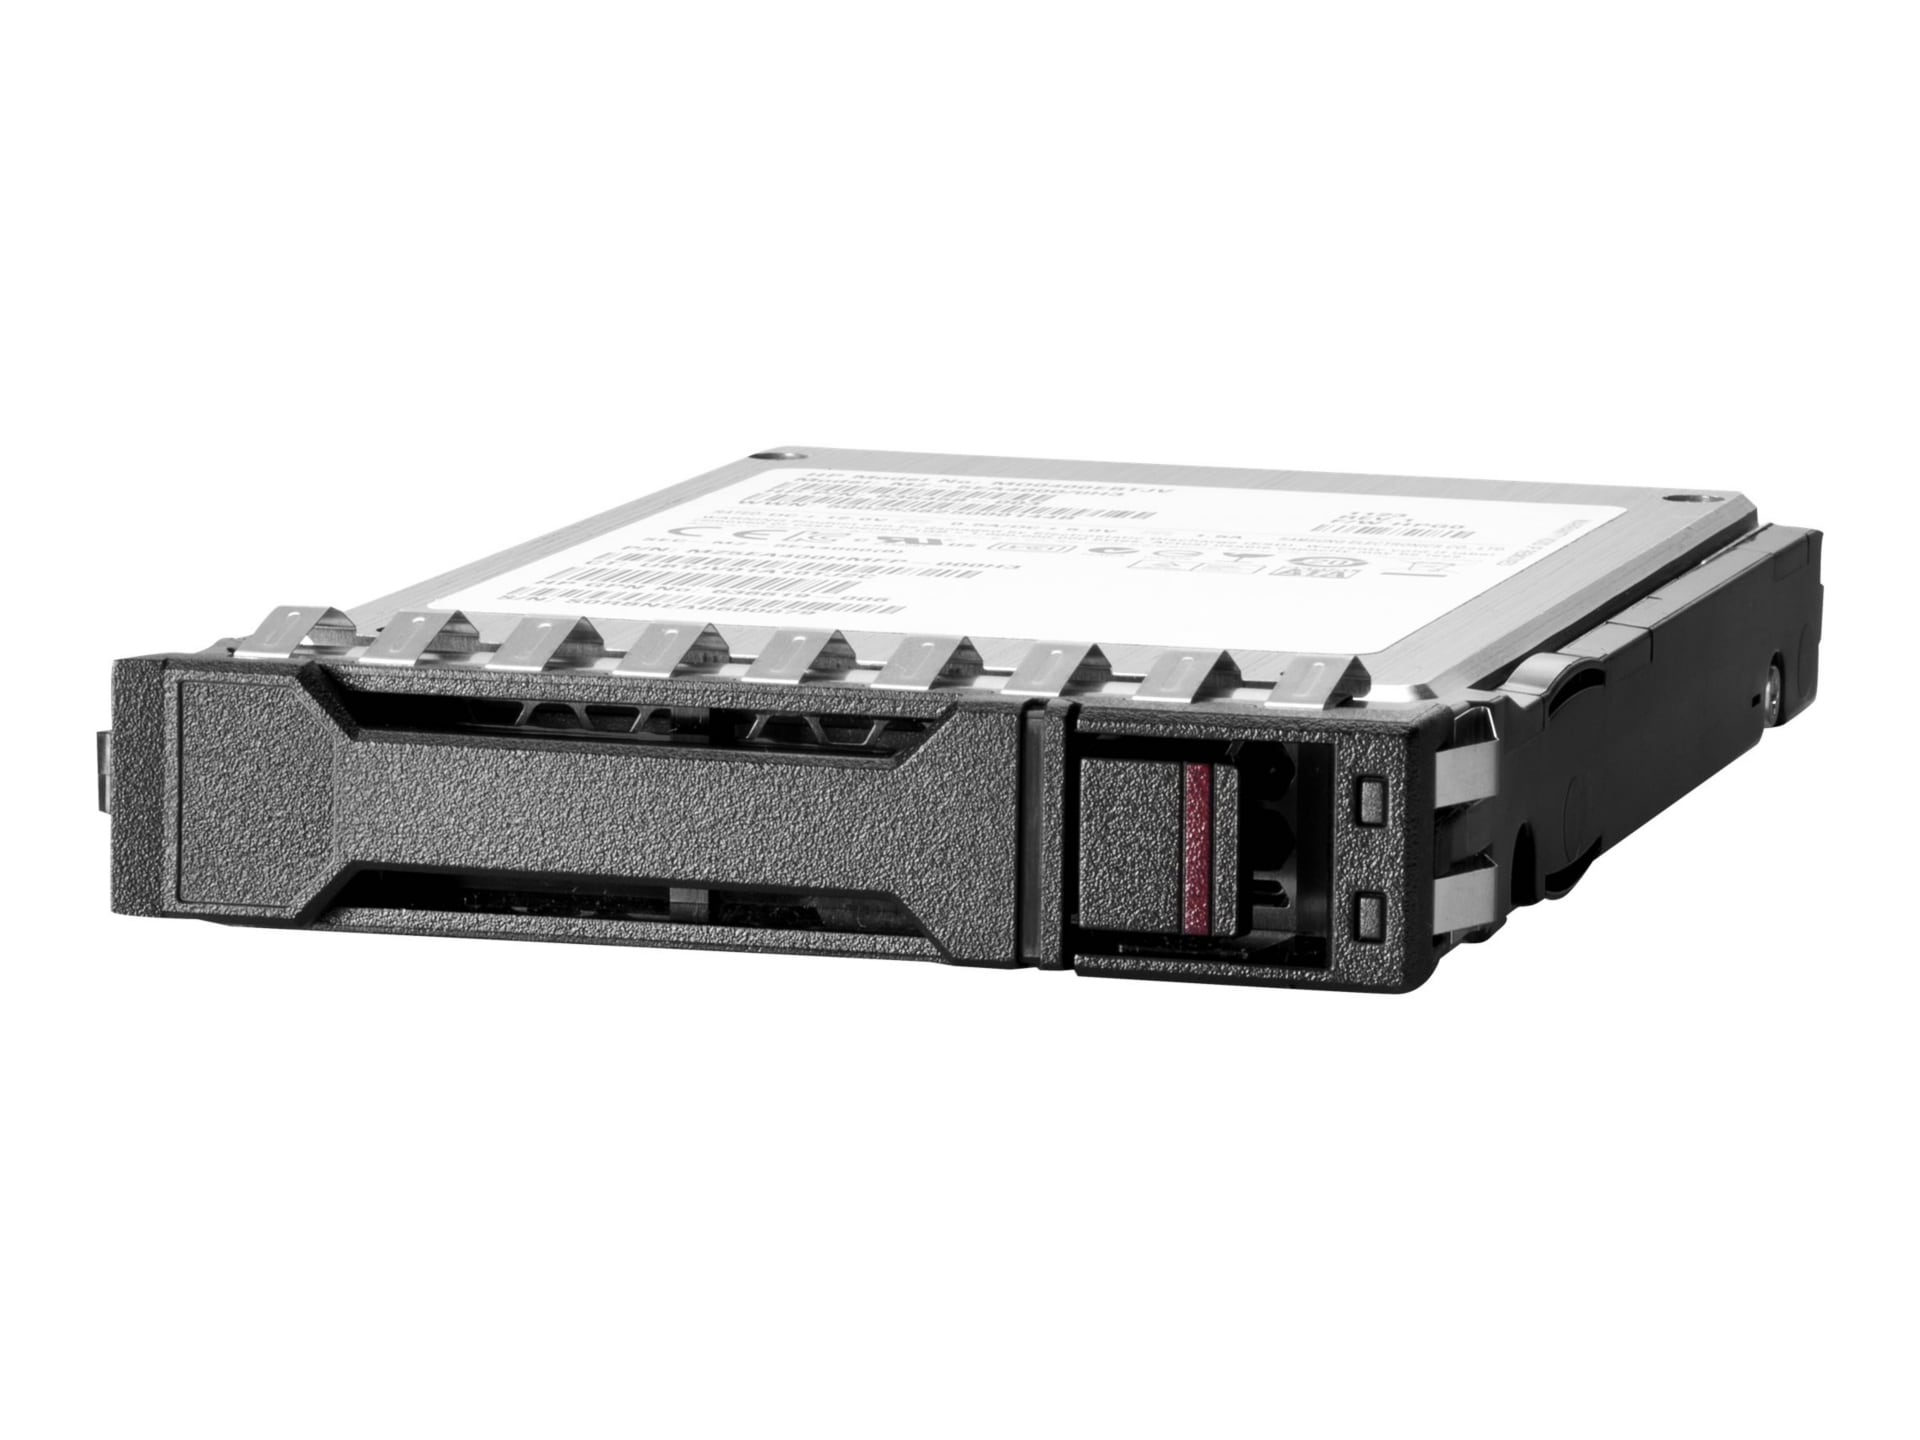 Synology HAT5300 - hard drive - 16 TB - SATA 6Gb/s - HAT5300-16T - Internal  Hard Drives - CDW.ca